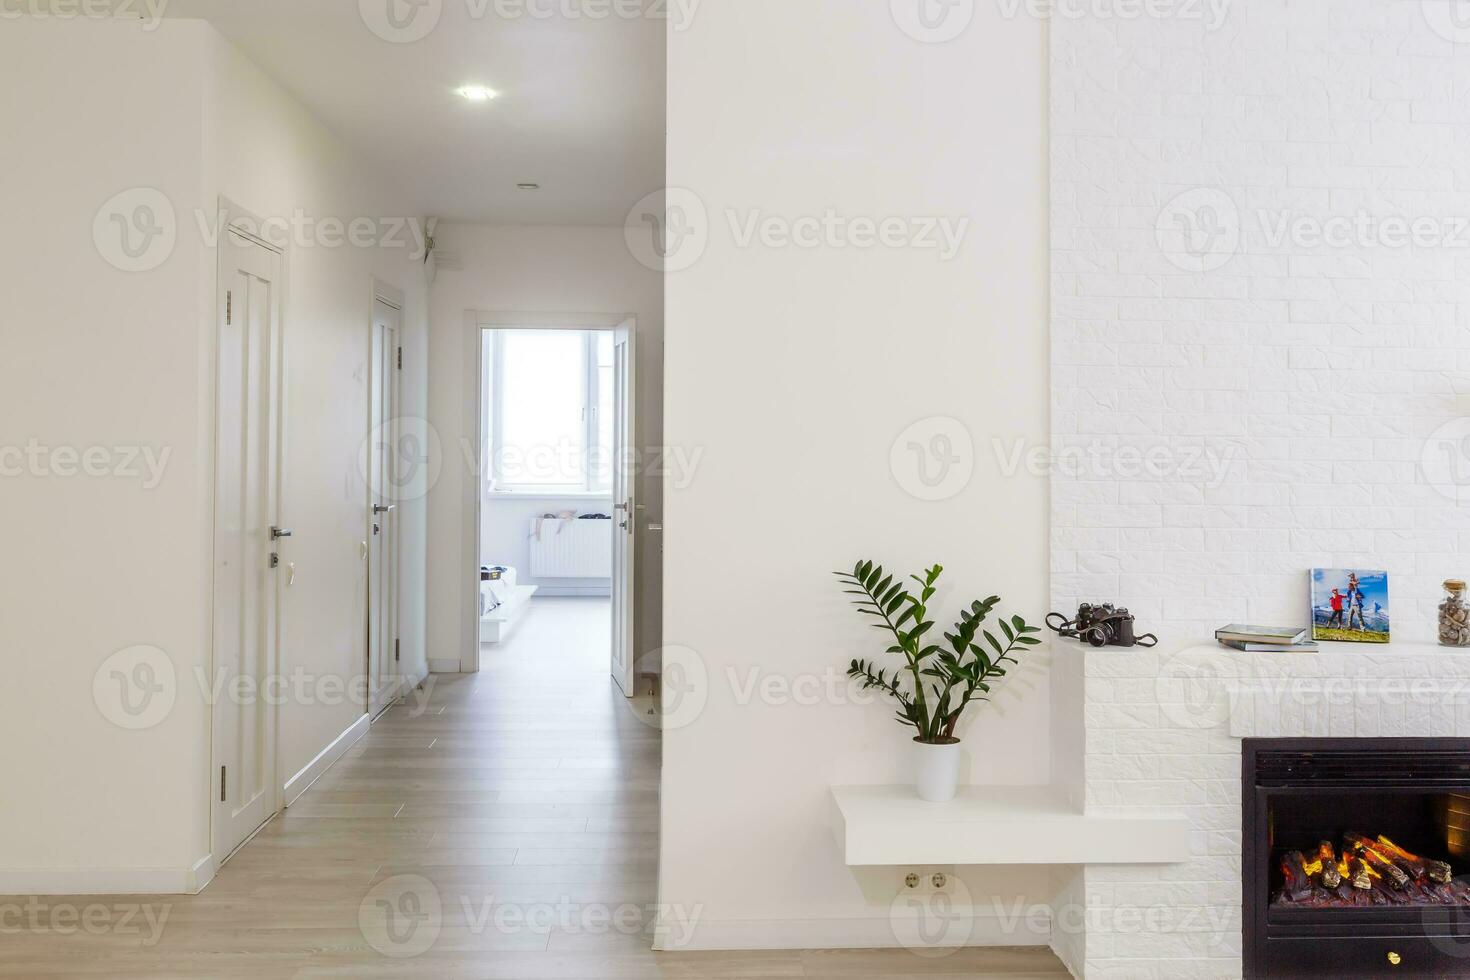 espaçoso villa interior com cimento parede efeito, lareira e televisão foto